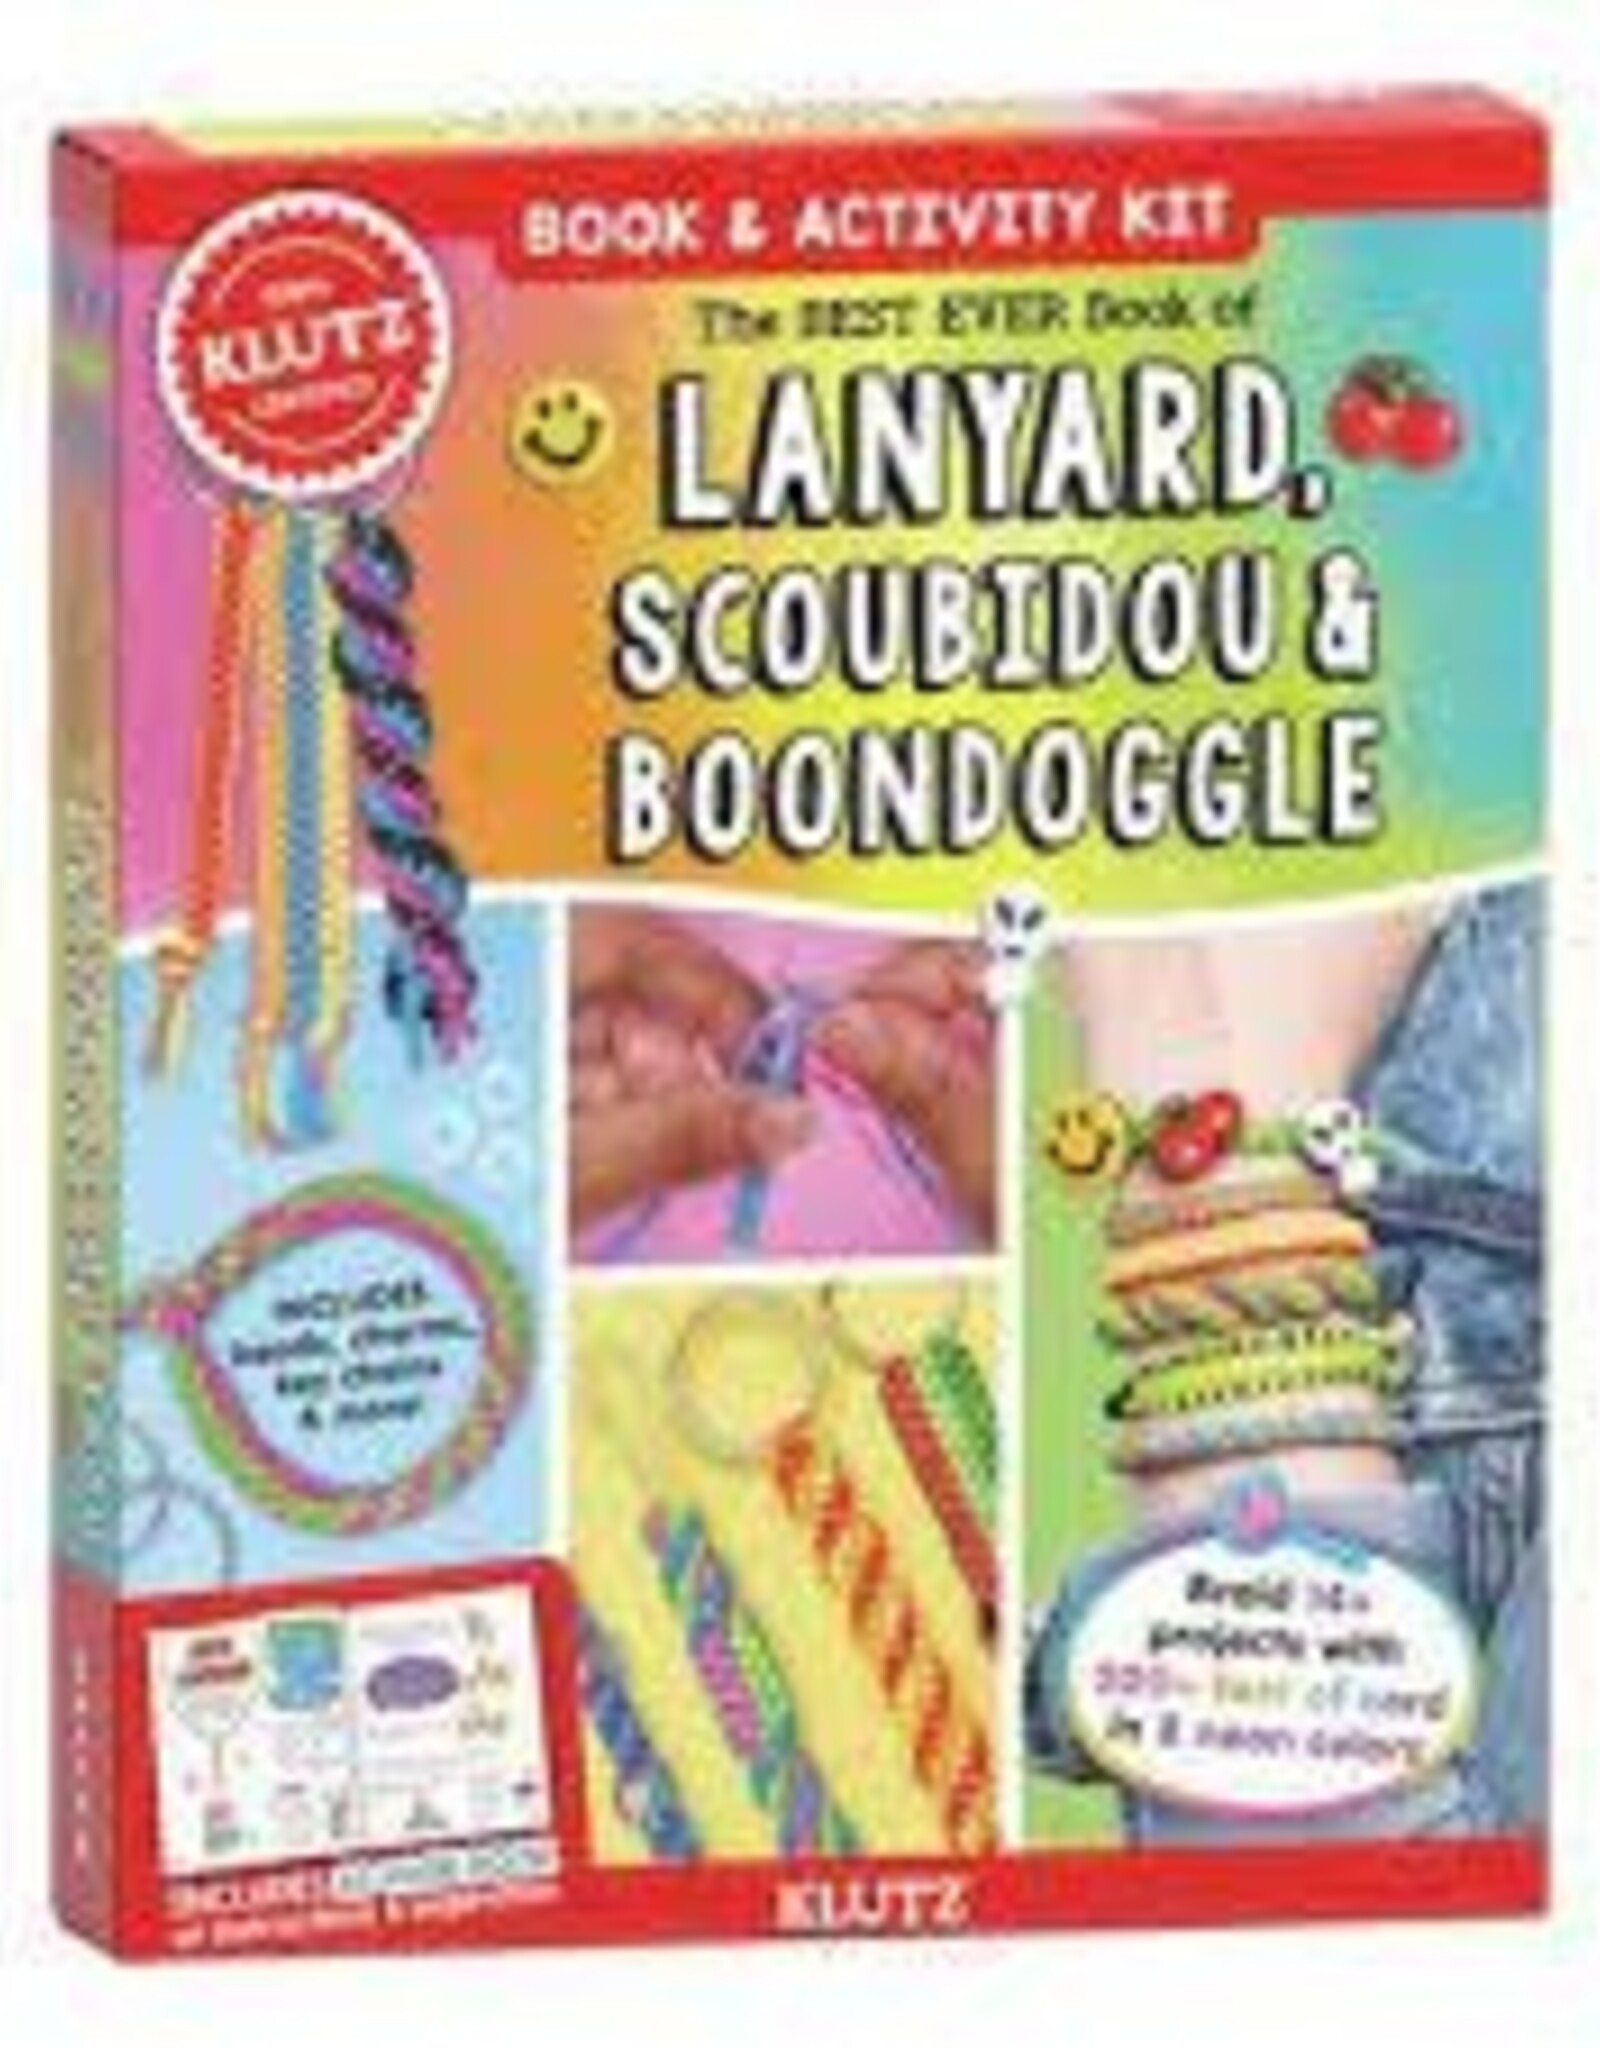 Klutz Best Ever Book of Lanyard, Scoubidou and Boondogg